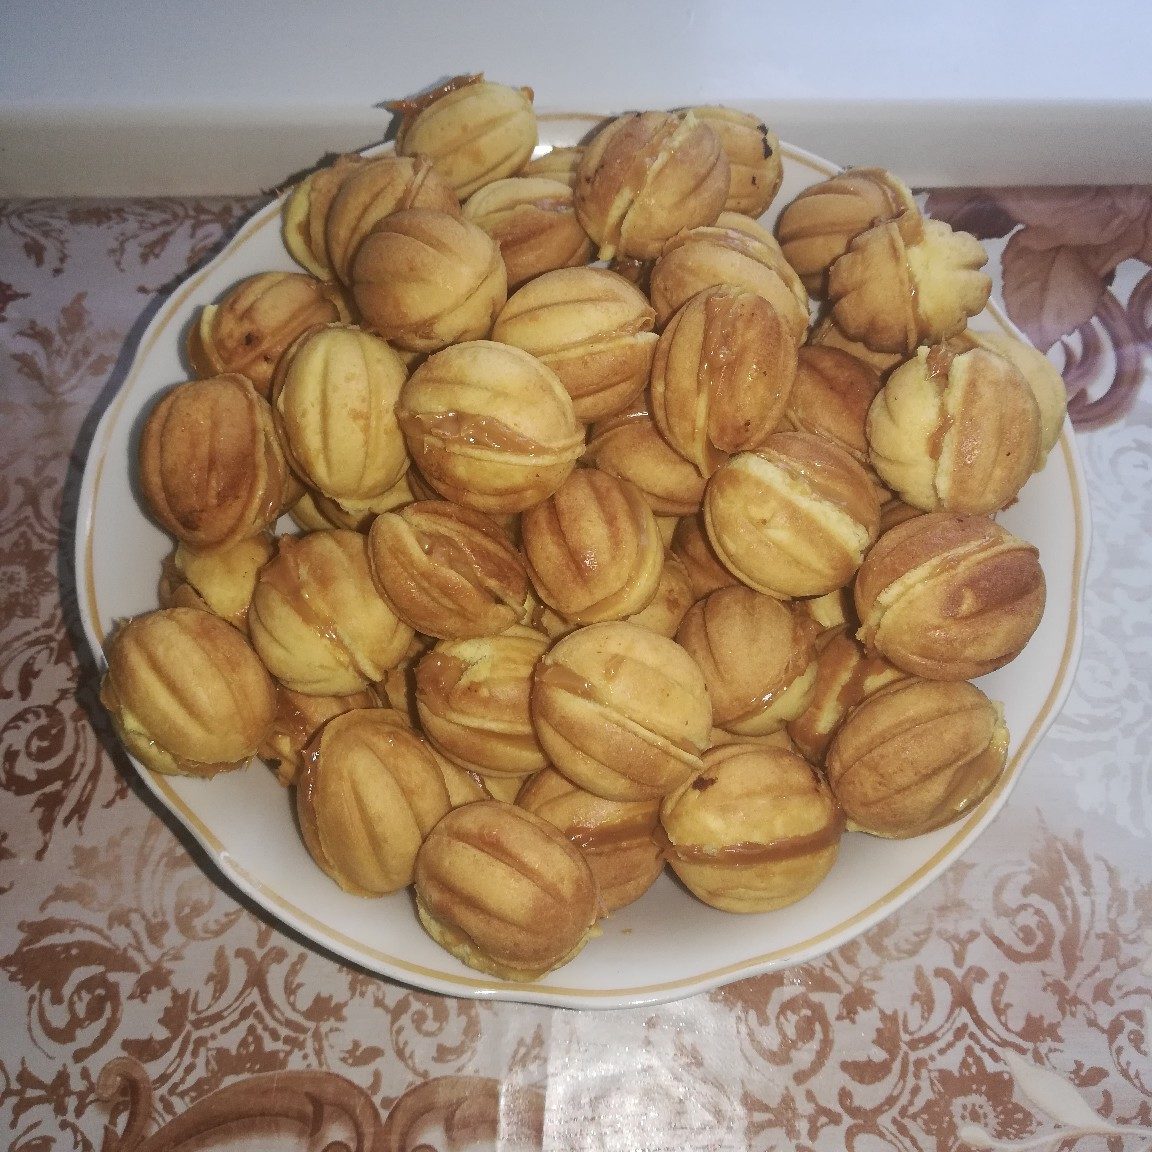 Орешки в советской орешнице на газу — рецепт с фото пошагово